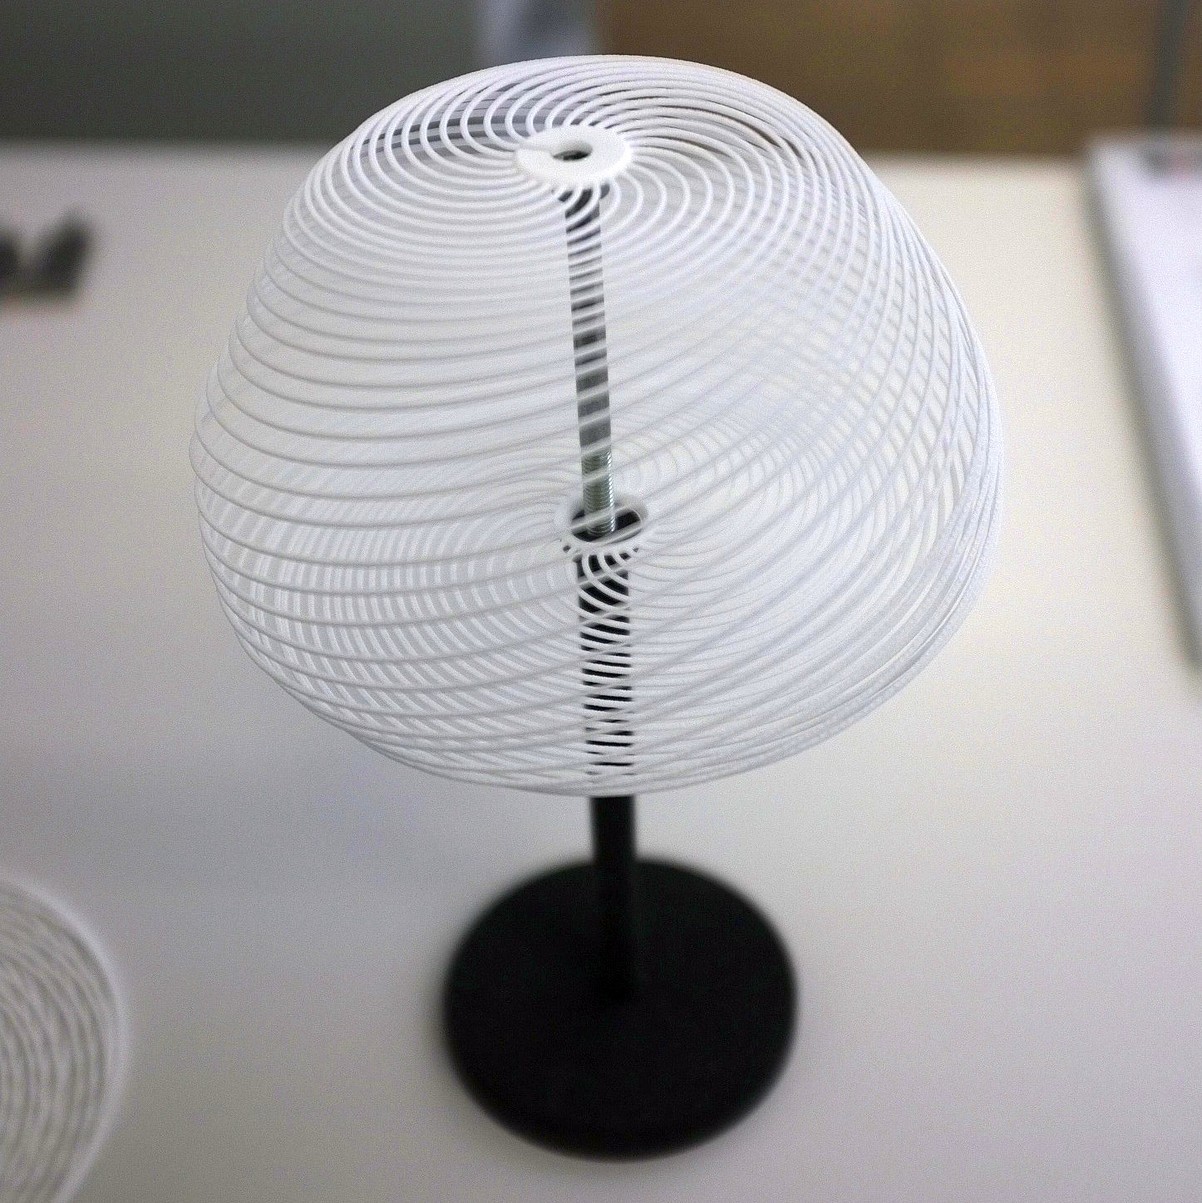 Nachtischlampe in weiss aus dem 3D Drucker.